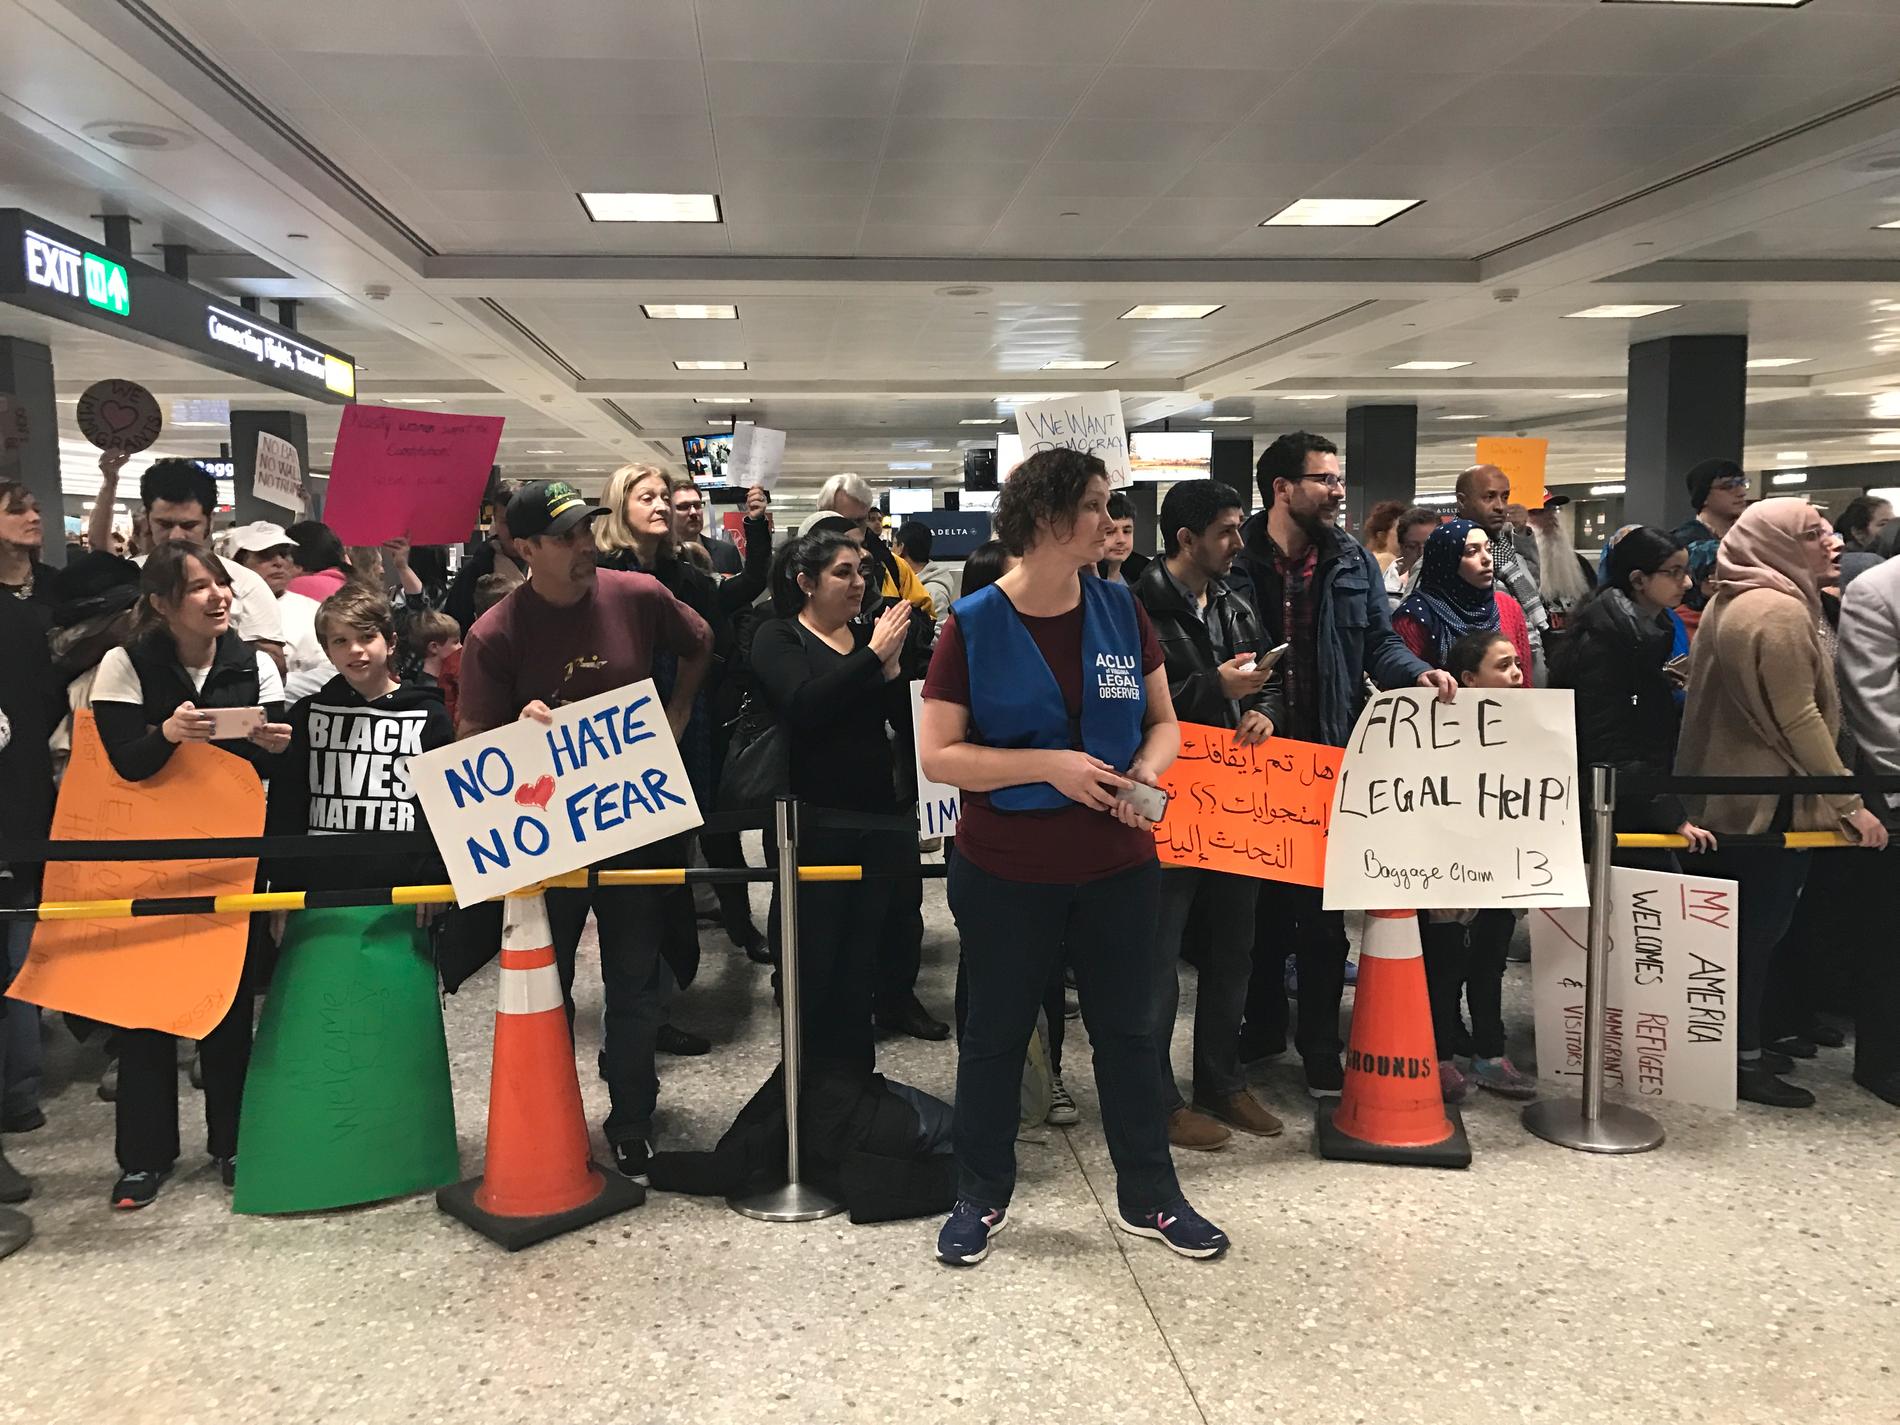 Hundratals människor samlades på söndagen på Washingtons internationella flygplats för att protestera mot Donald Trumps inreseförbud.